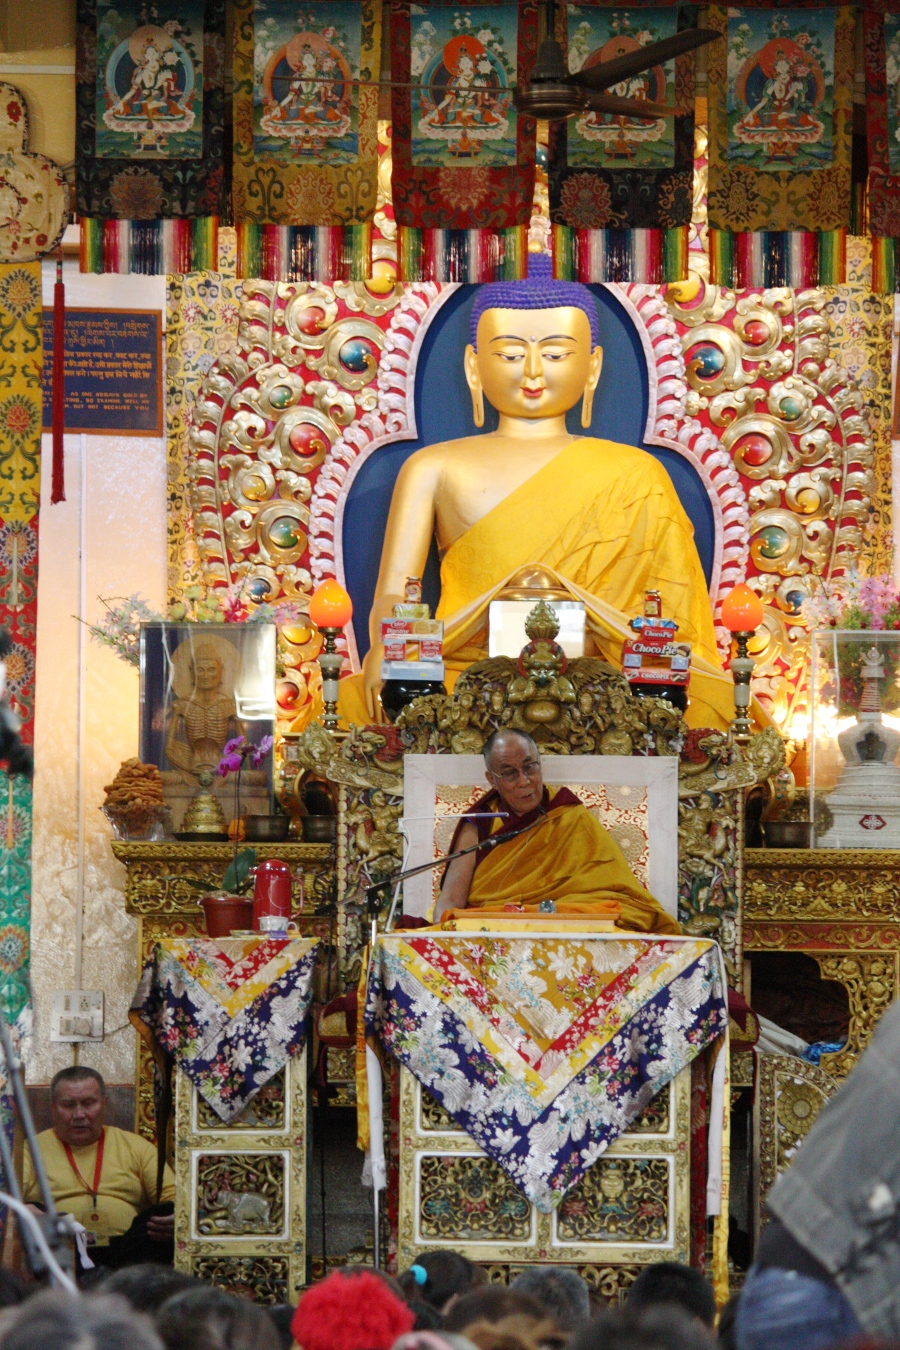 Sua Santità il Dalai Lama: Tramite la calma mentale e la visione profonda, conseguono le esperienze meditative e la realizzazione interiore, dando vita così alla conoscenza teorica che senza di essi manterrebbe un carattere un po’ mitico o artificiale. Non posso fare altro che incoraggiarli. 